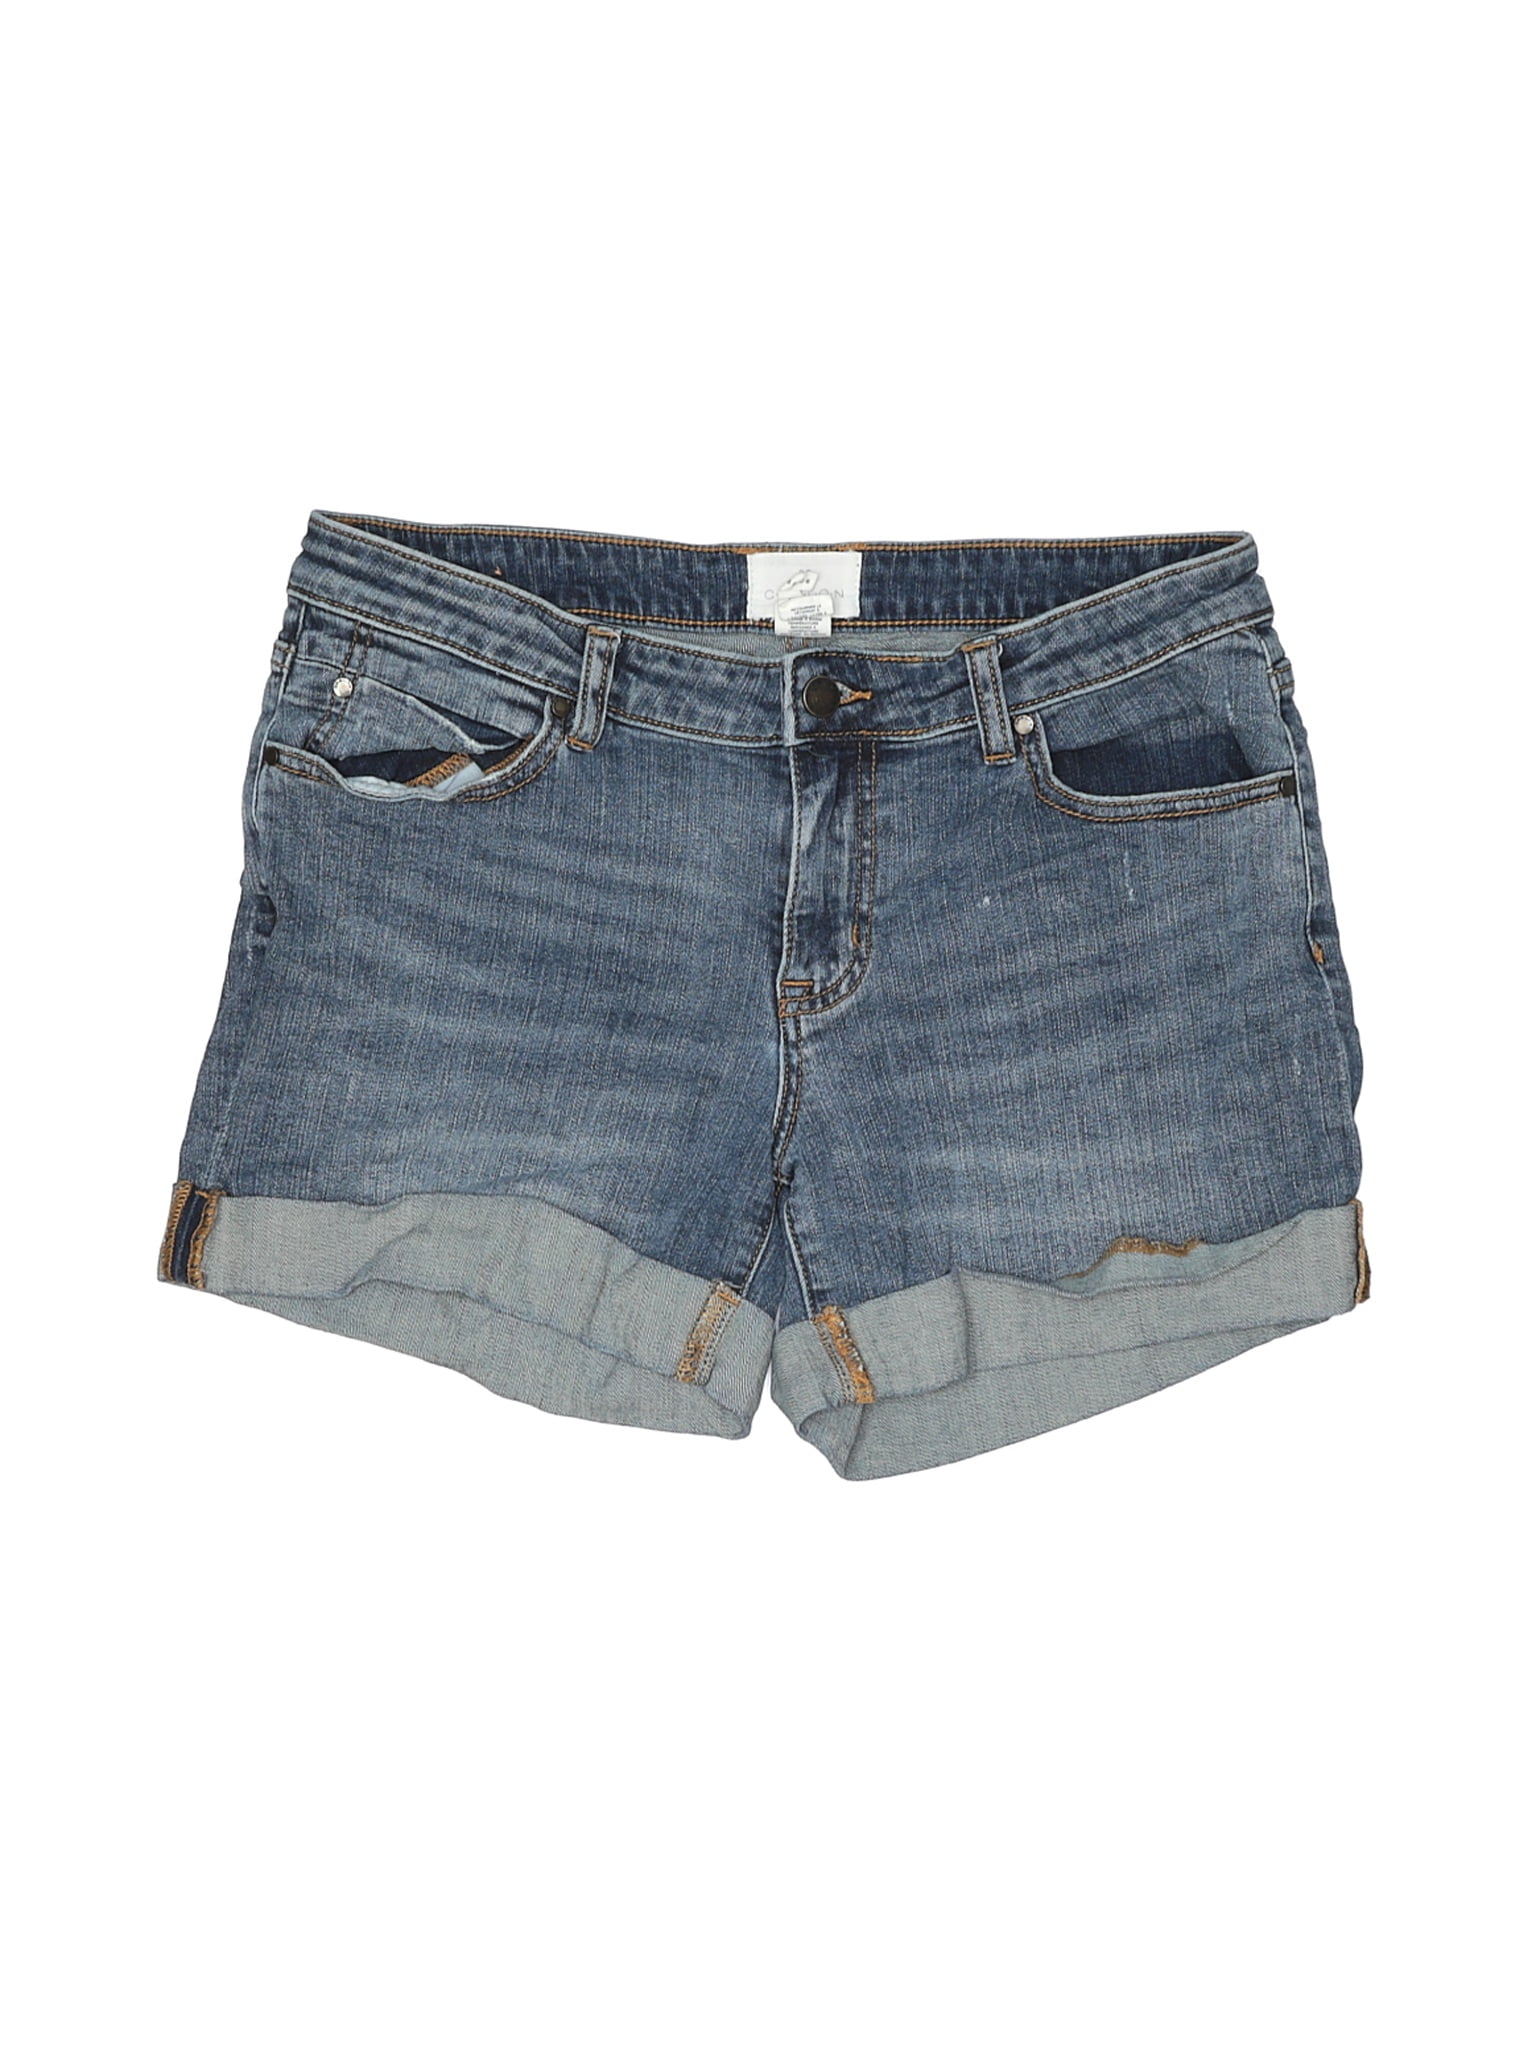 caslon jean shorts